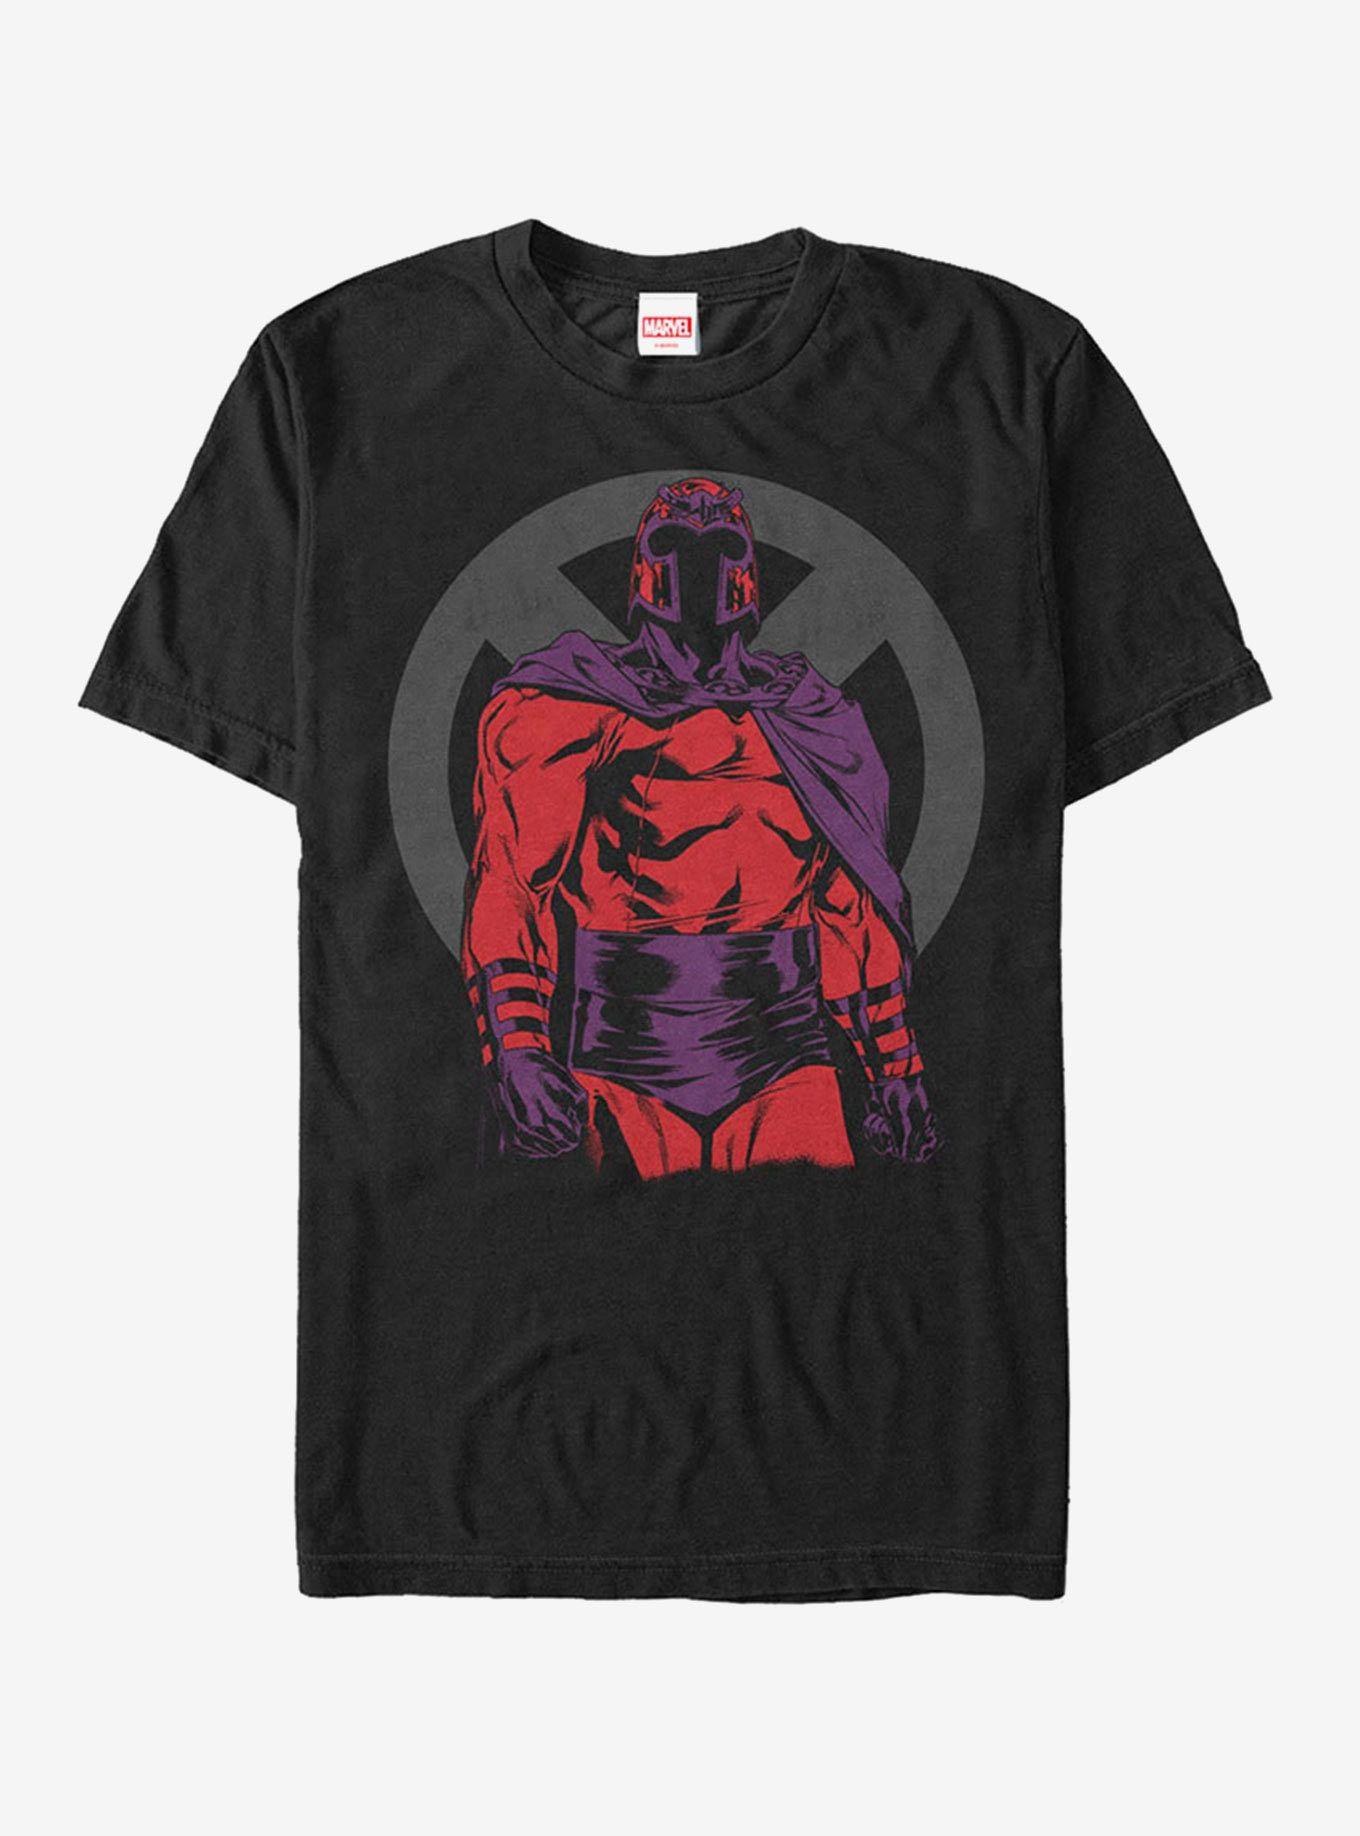 Magneto Logo - Marvel X Men Magneto Logo T Shirt